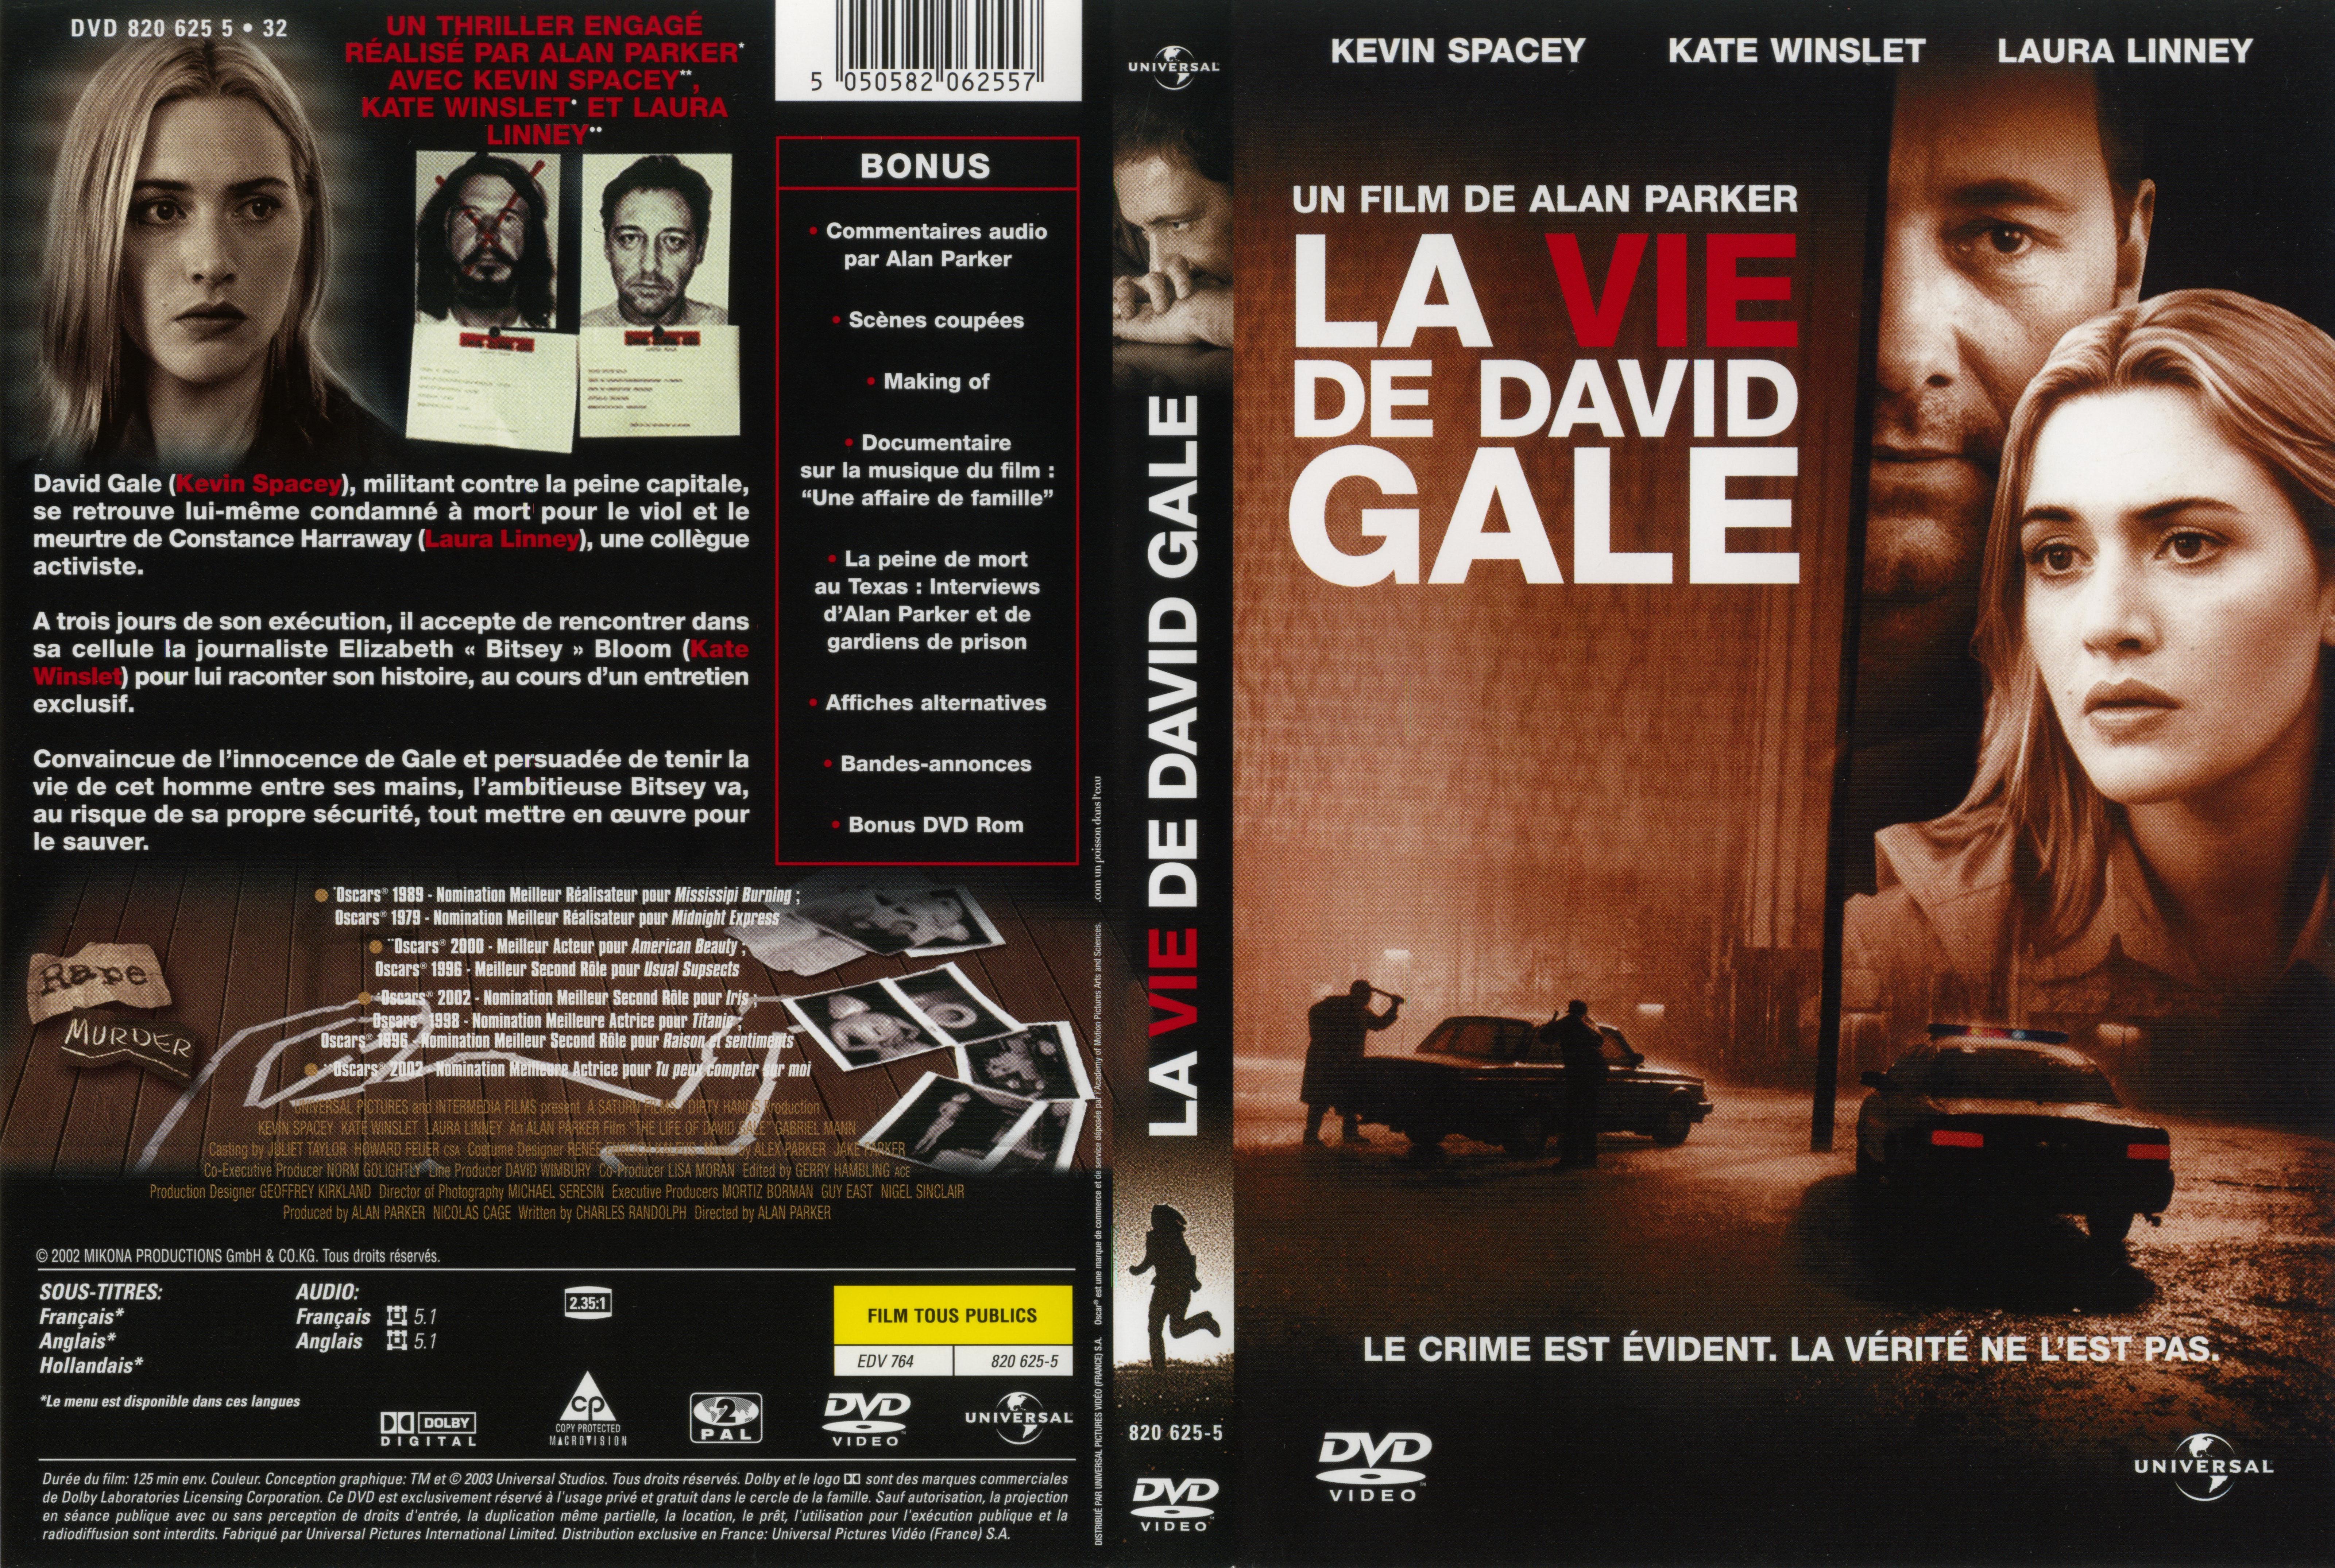 Jaquette DVD La vie de David Gale v2